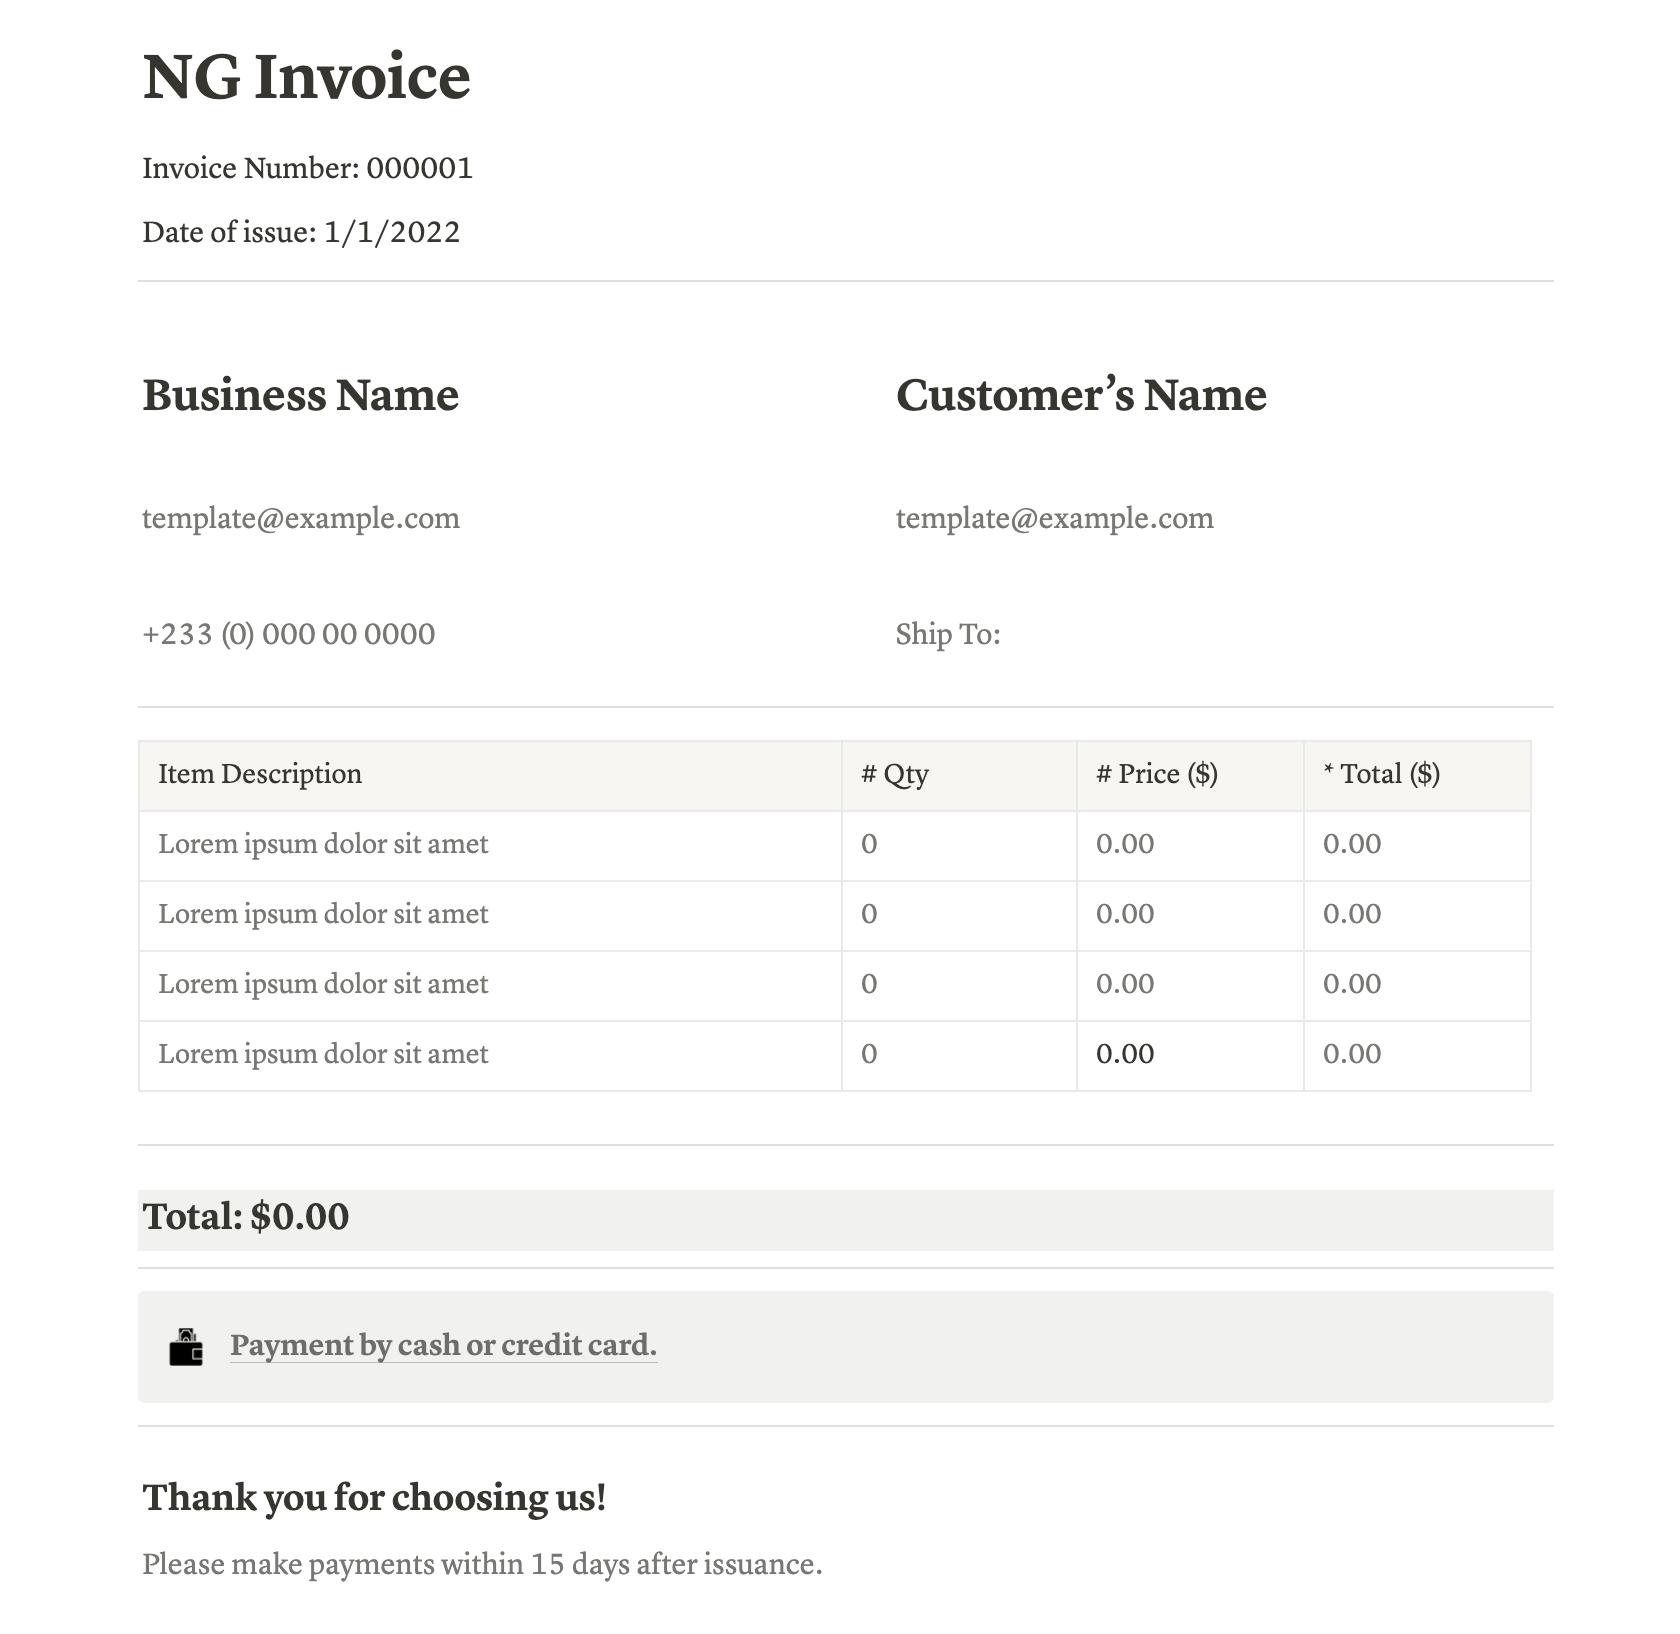 NG invoice